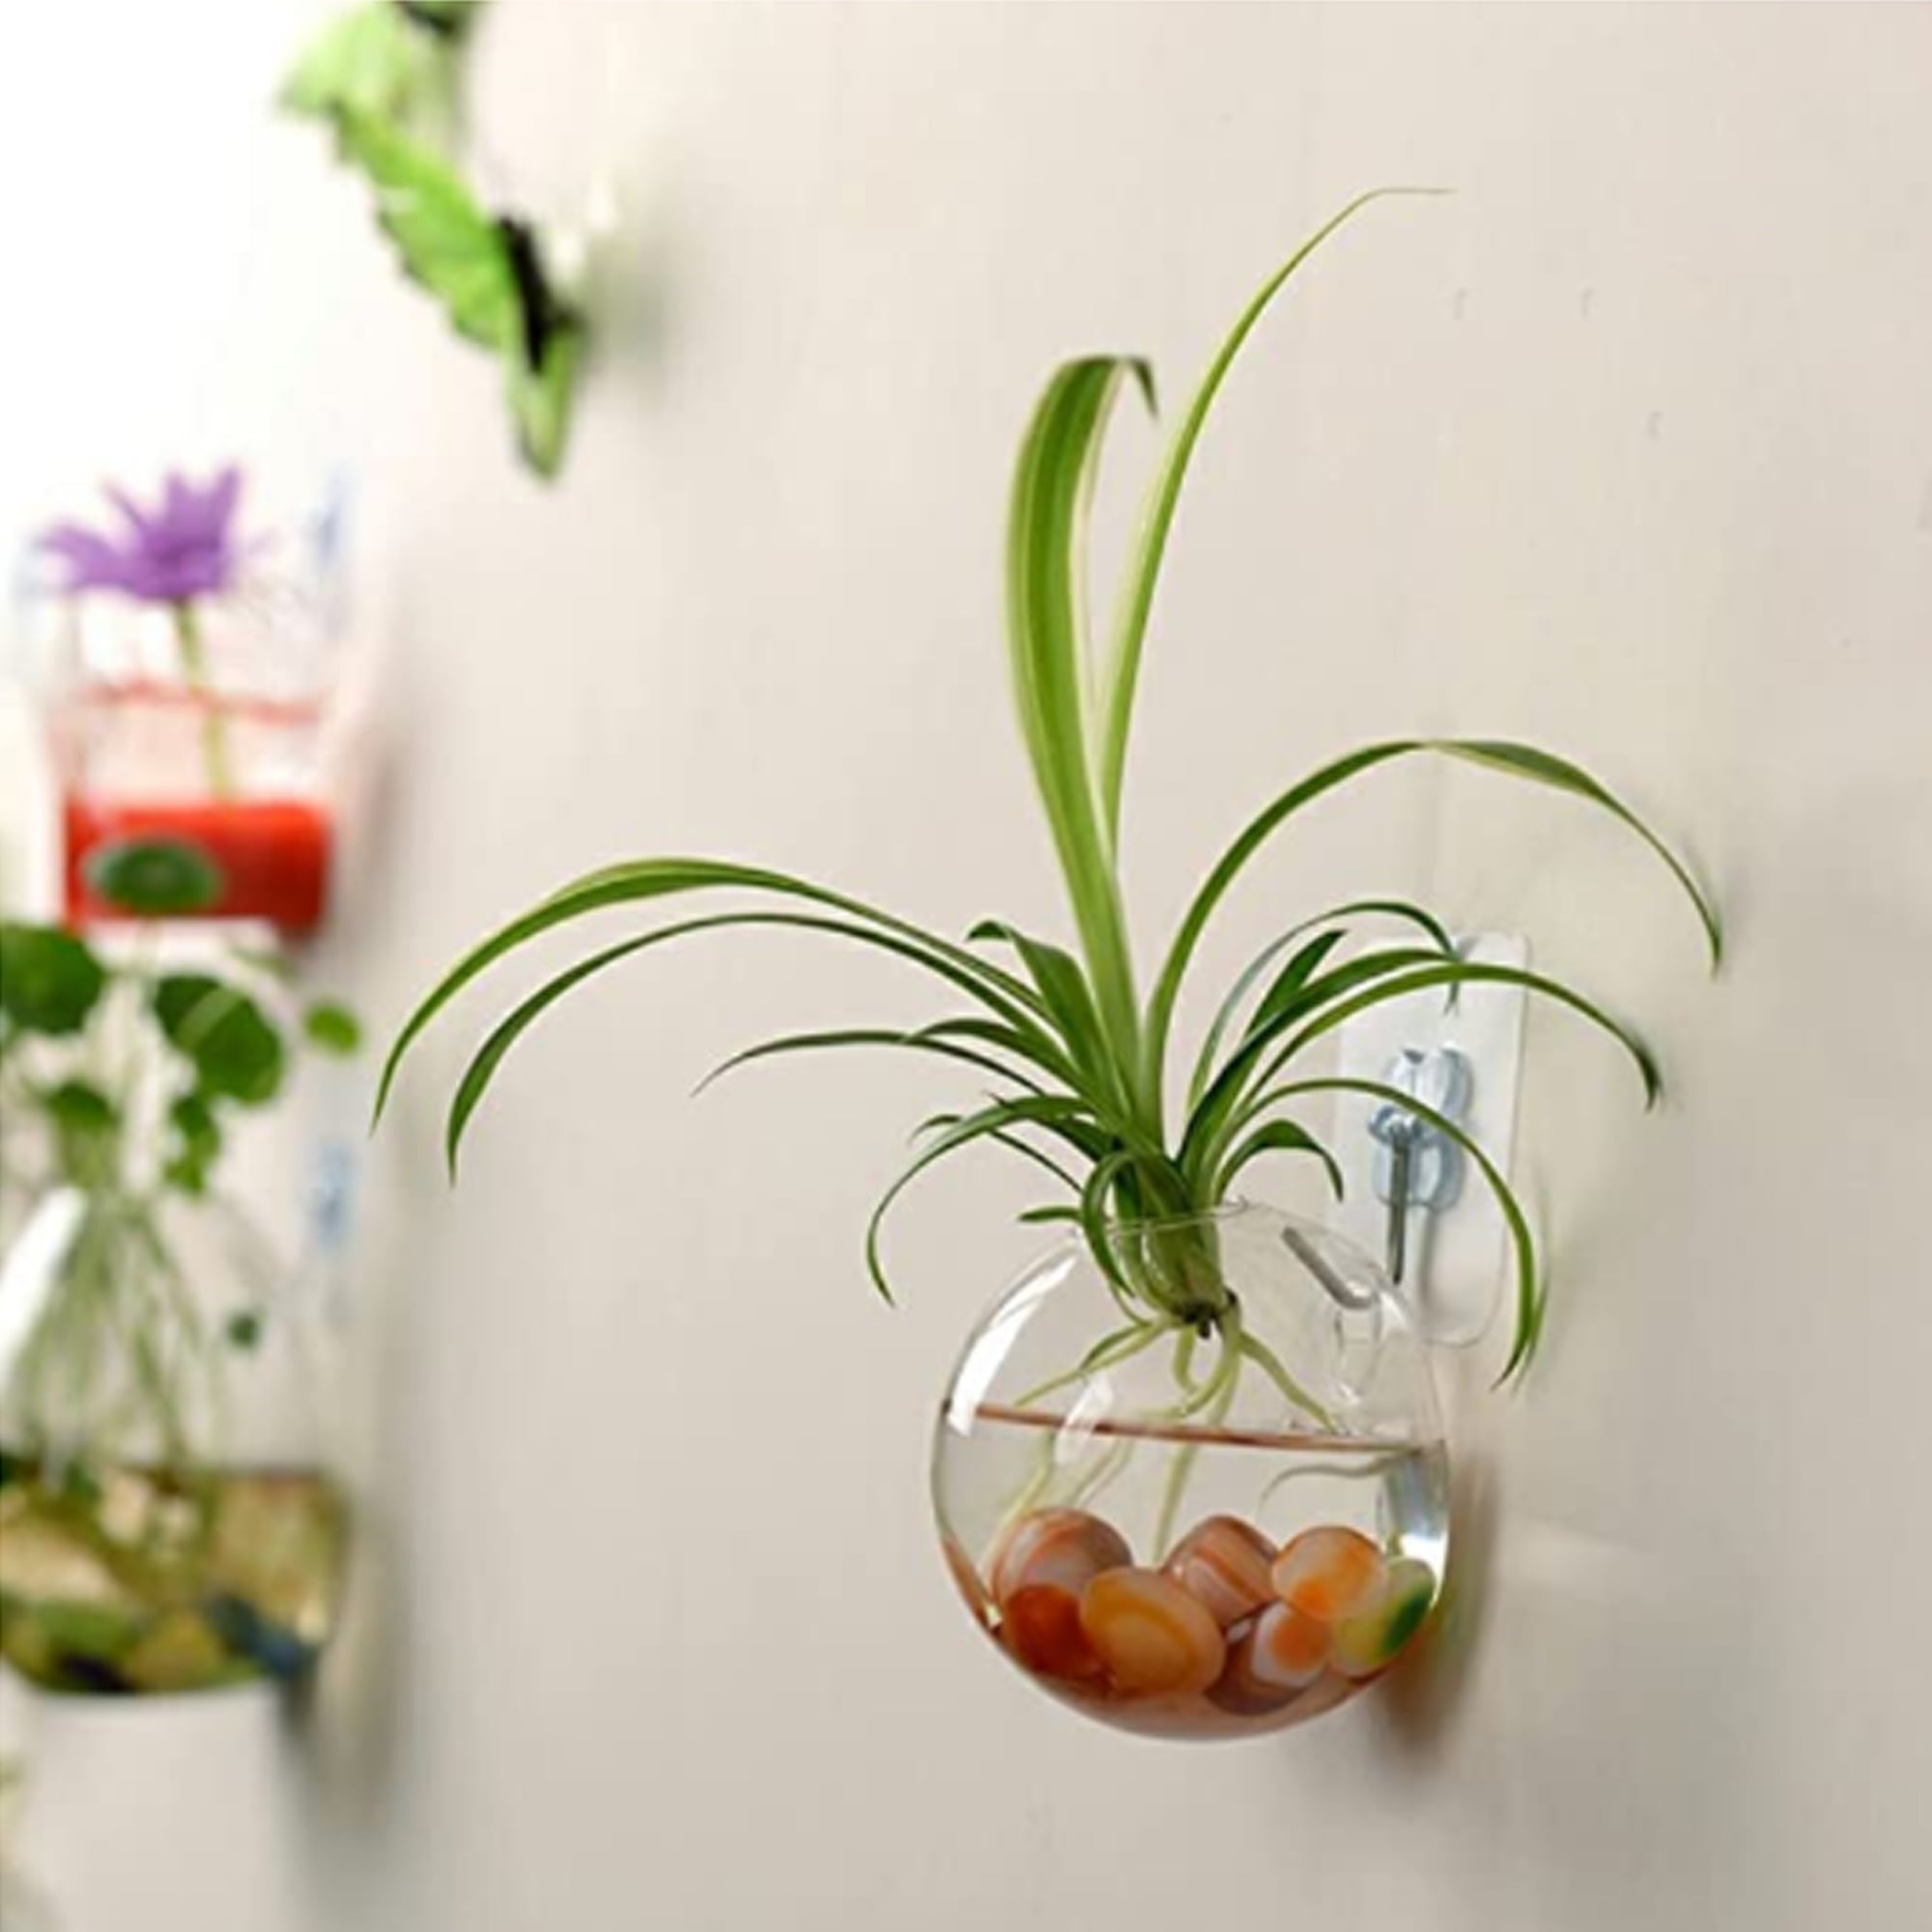 UNIHOM Hanging Vase Air Planter Handmade Home Decor Glass Planter 6cm~15cm 